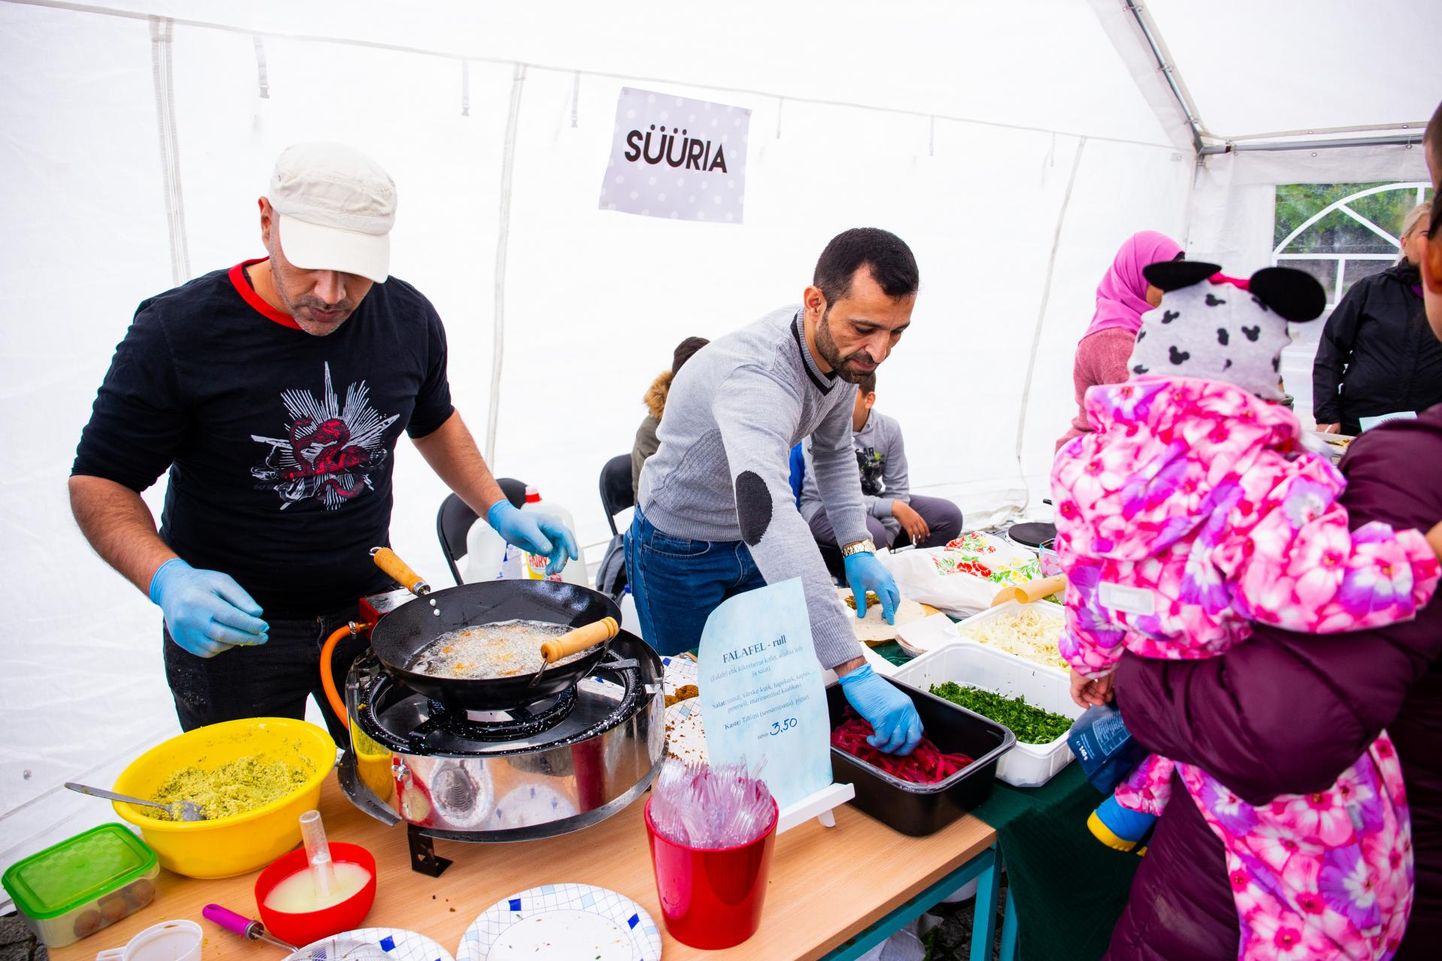 Inimeselt inimesele: toidu- ja kultuurifestival Kamalammas toob toitu vaaritama eri rahvusest inimesed.